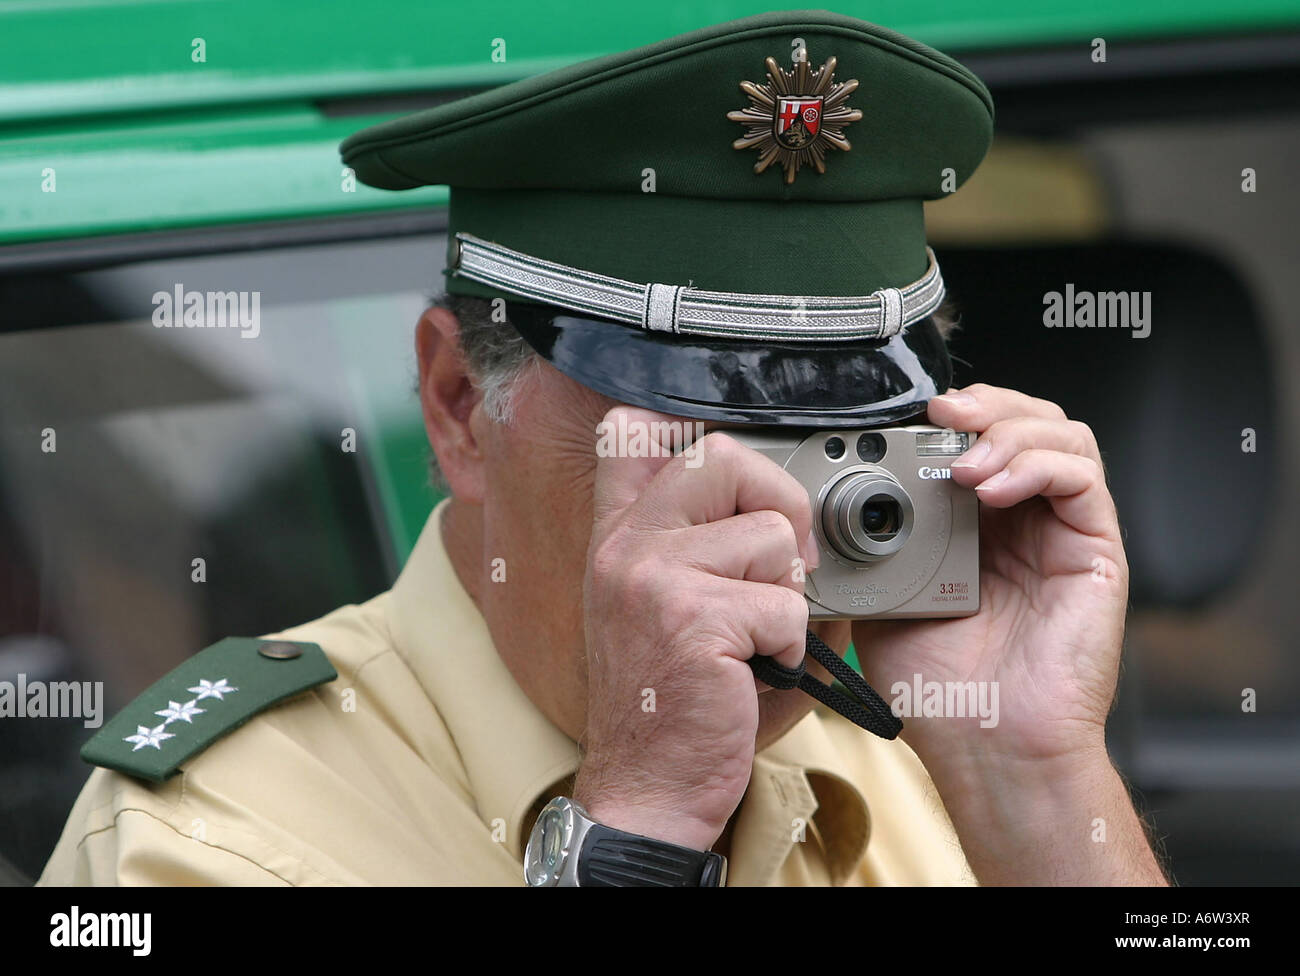 Halt Polizei, Polizist mit Polizeikelle Stock Photo - Alamy